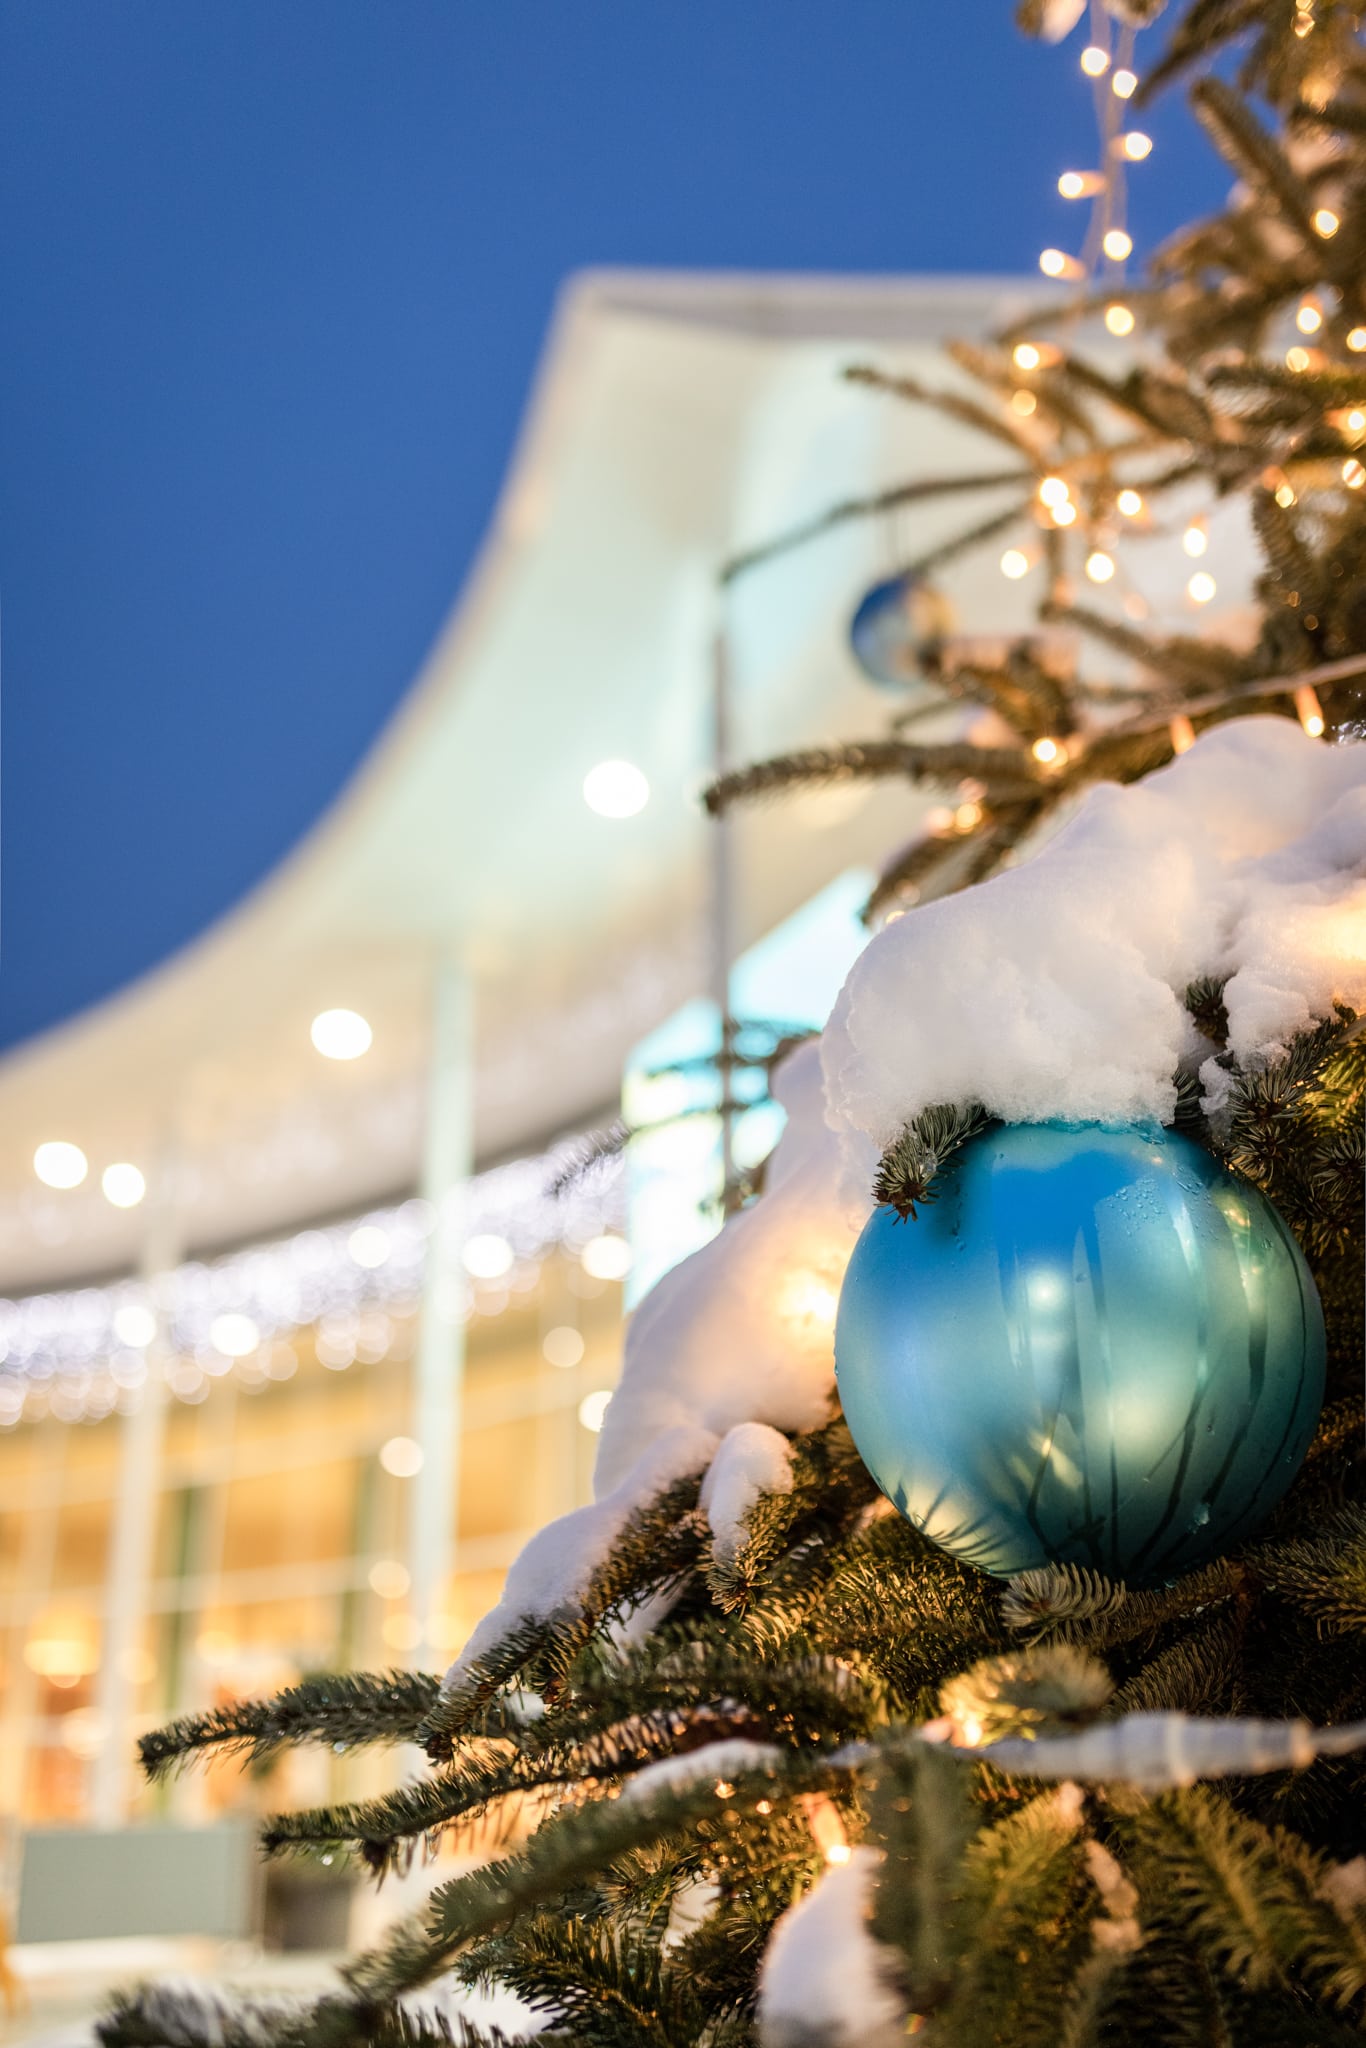 Zu sehen ist ein beleuchteter Christbaum mit einer blauen Kugel, der vor der Parktherme in der winterlichen Schneelandschaft steht.